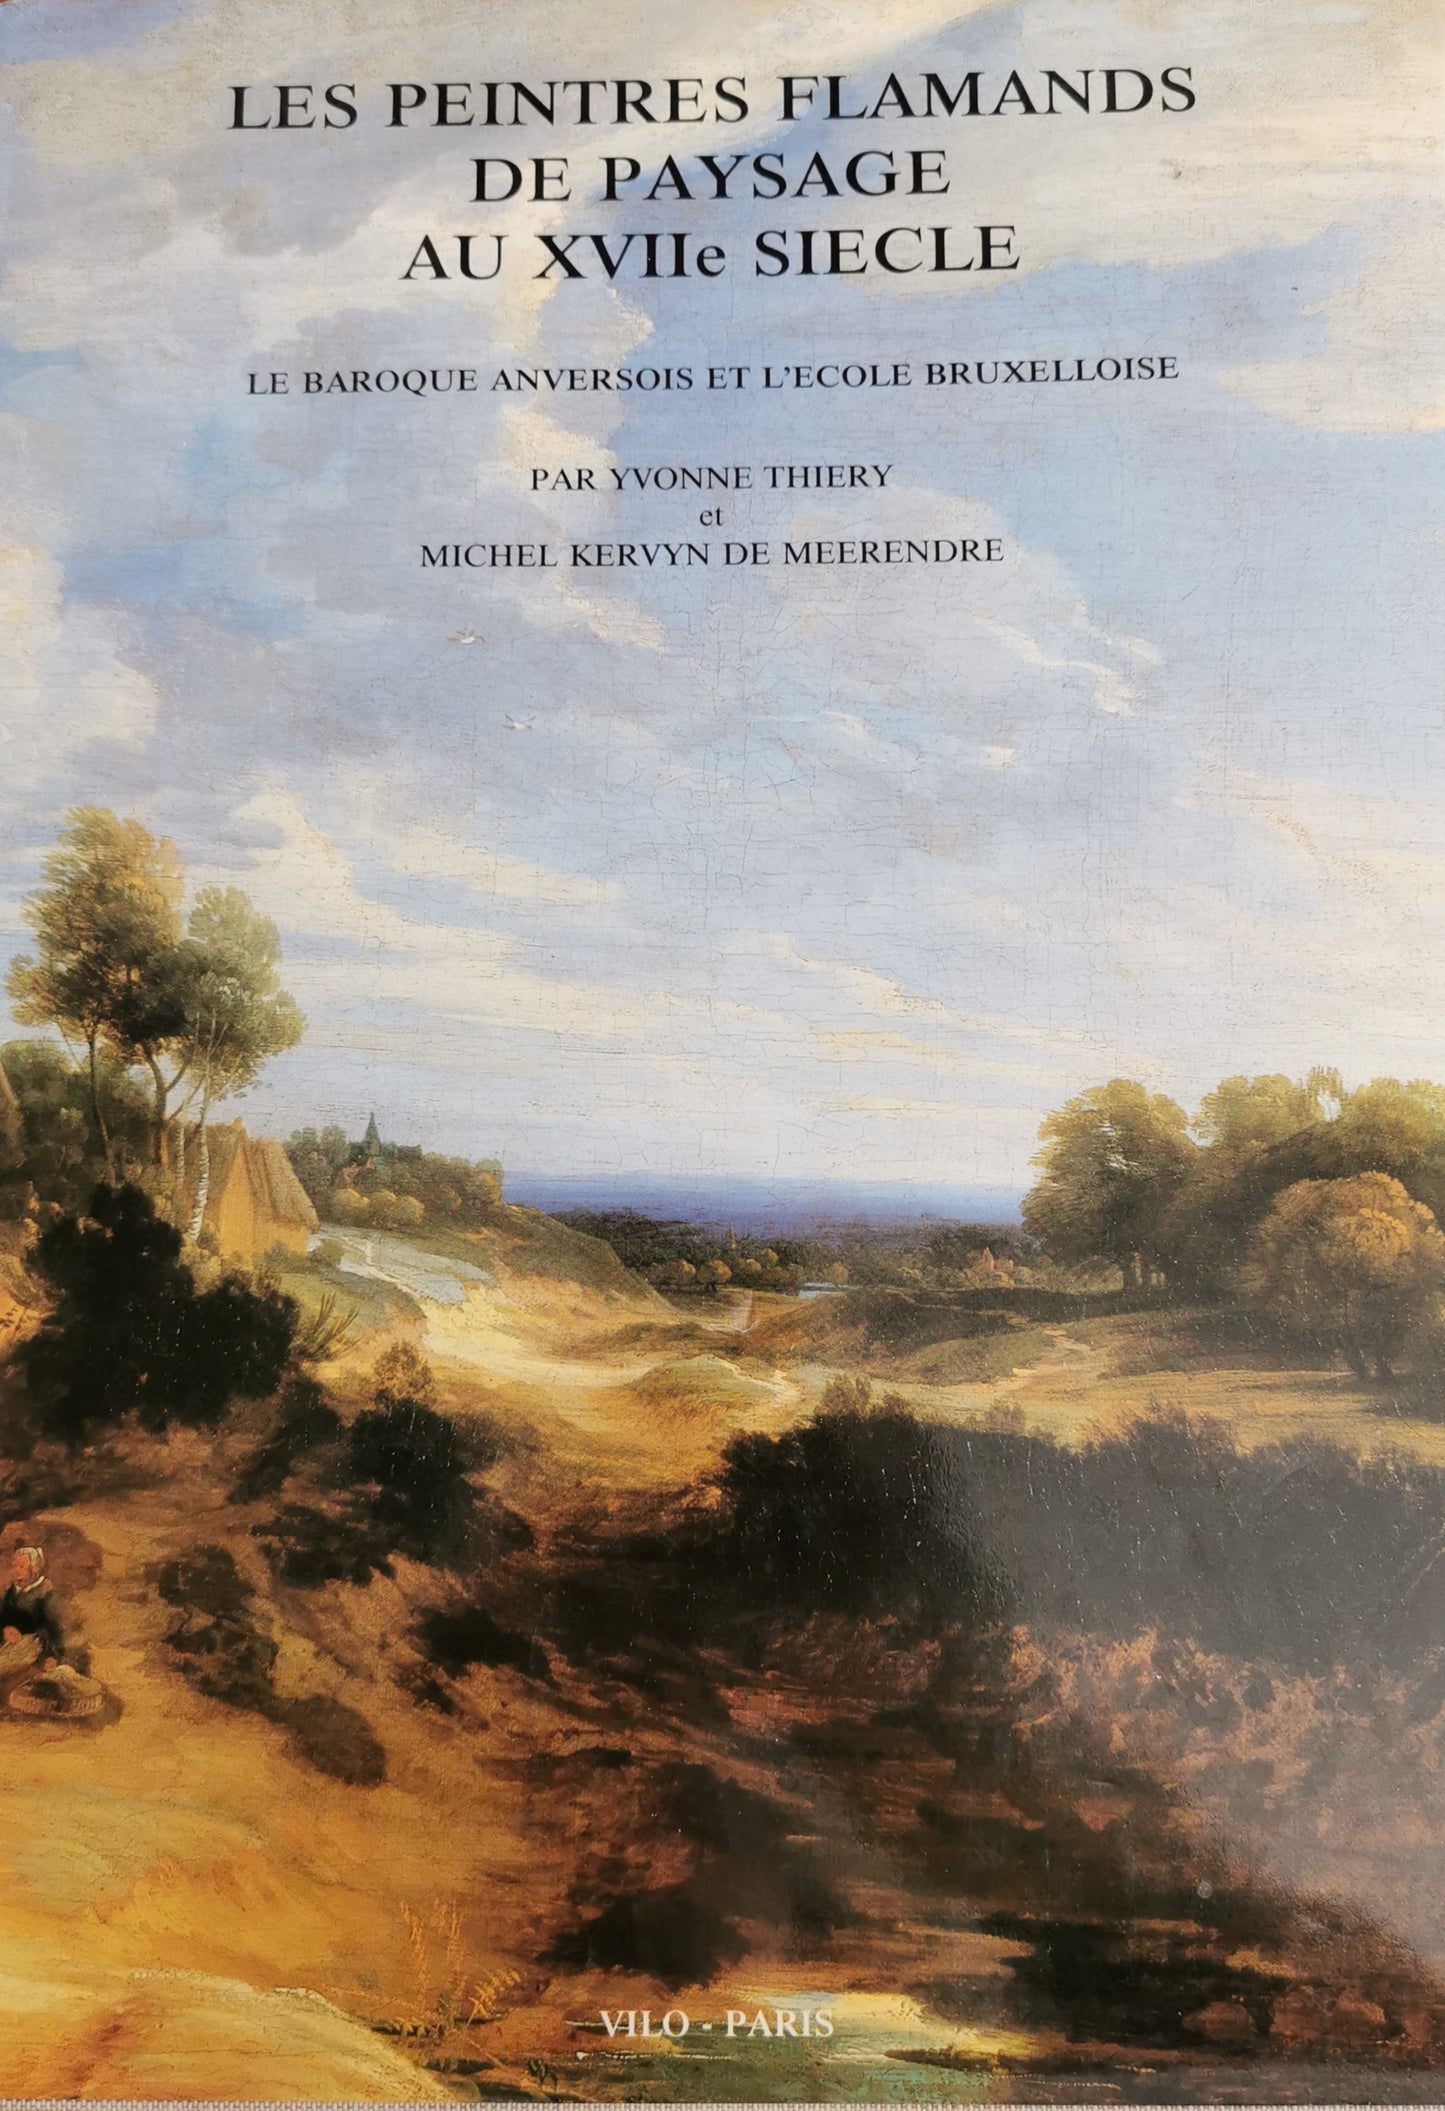 Les peintres flamands de paysage au XVIIe siècle, le baroque anversois et l'école bruxelloise, Yvonne Thierry, Michel Kervyn de Meerendre, Vilo-Paris, Lefebvre et Gillet, 1987.